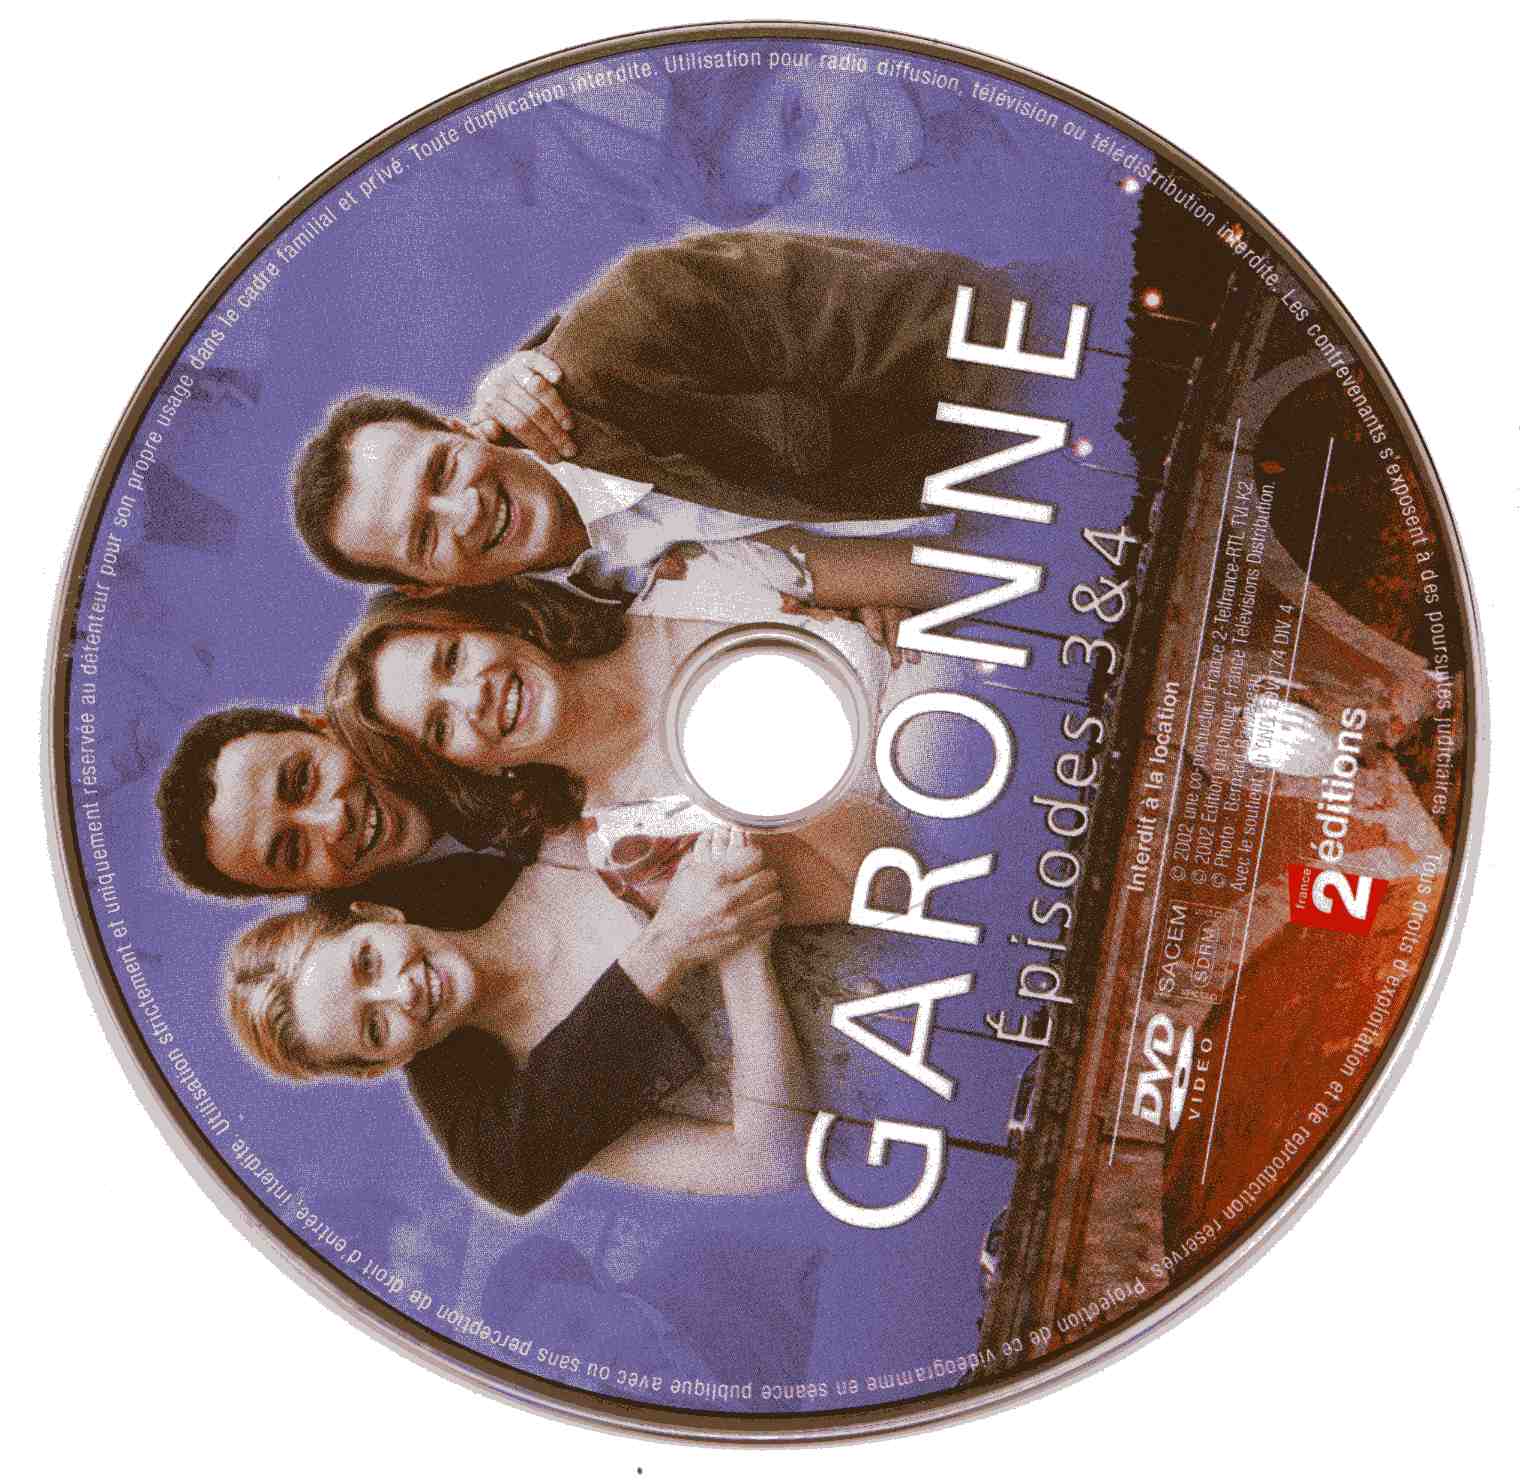 Garonne (disc 2)